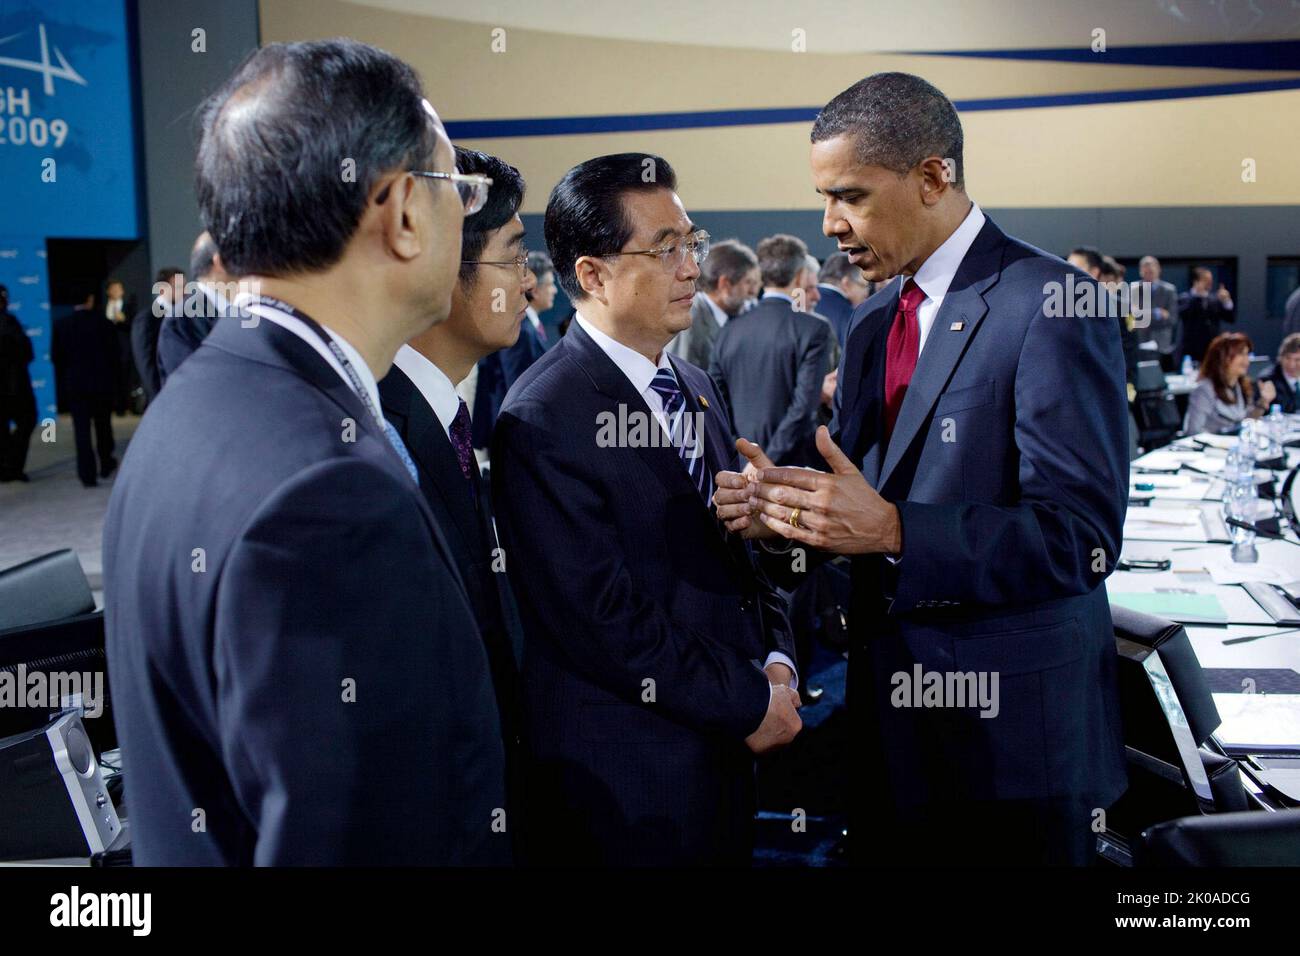 US-Präsident Barack Obama spricht mit dem chinesischen Präsidenten Hu Jintao während der morgendlichen Plenarsitzung des G-20 Pittsburgh-Gipfels im David L. Lawrence Convention Center in Pittsburgh. 2009 Stockfoto